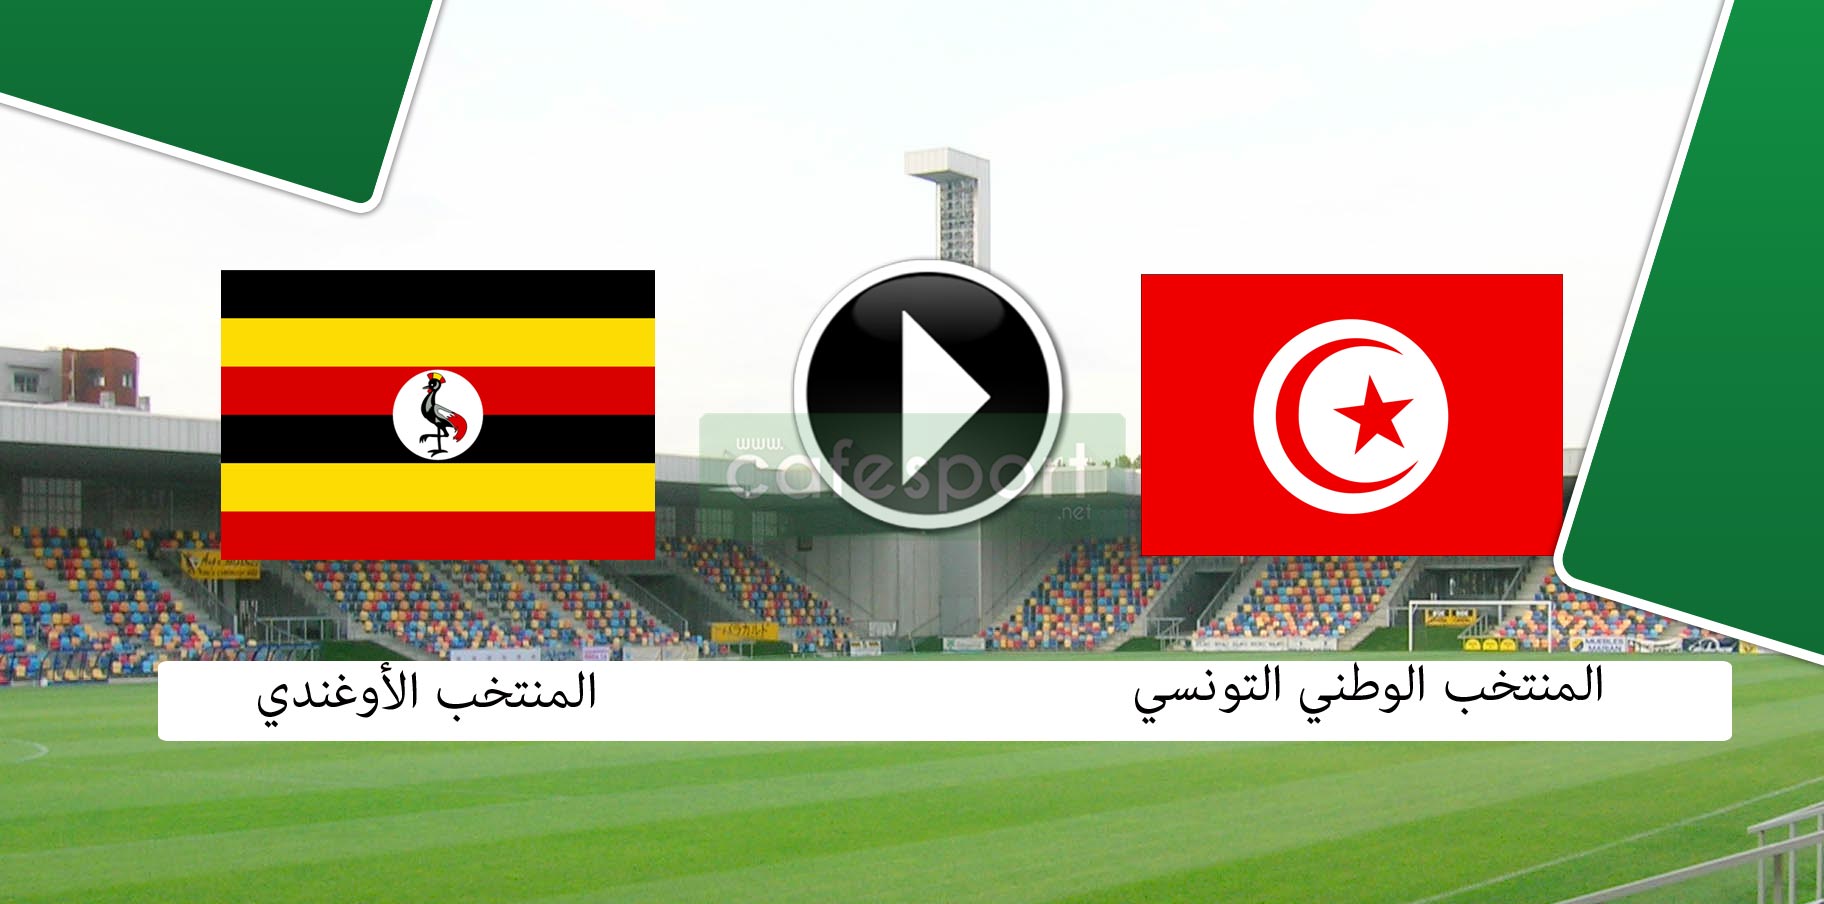 رسمي تونس - أوغندا منقولة تلفزيا على هذه القناة